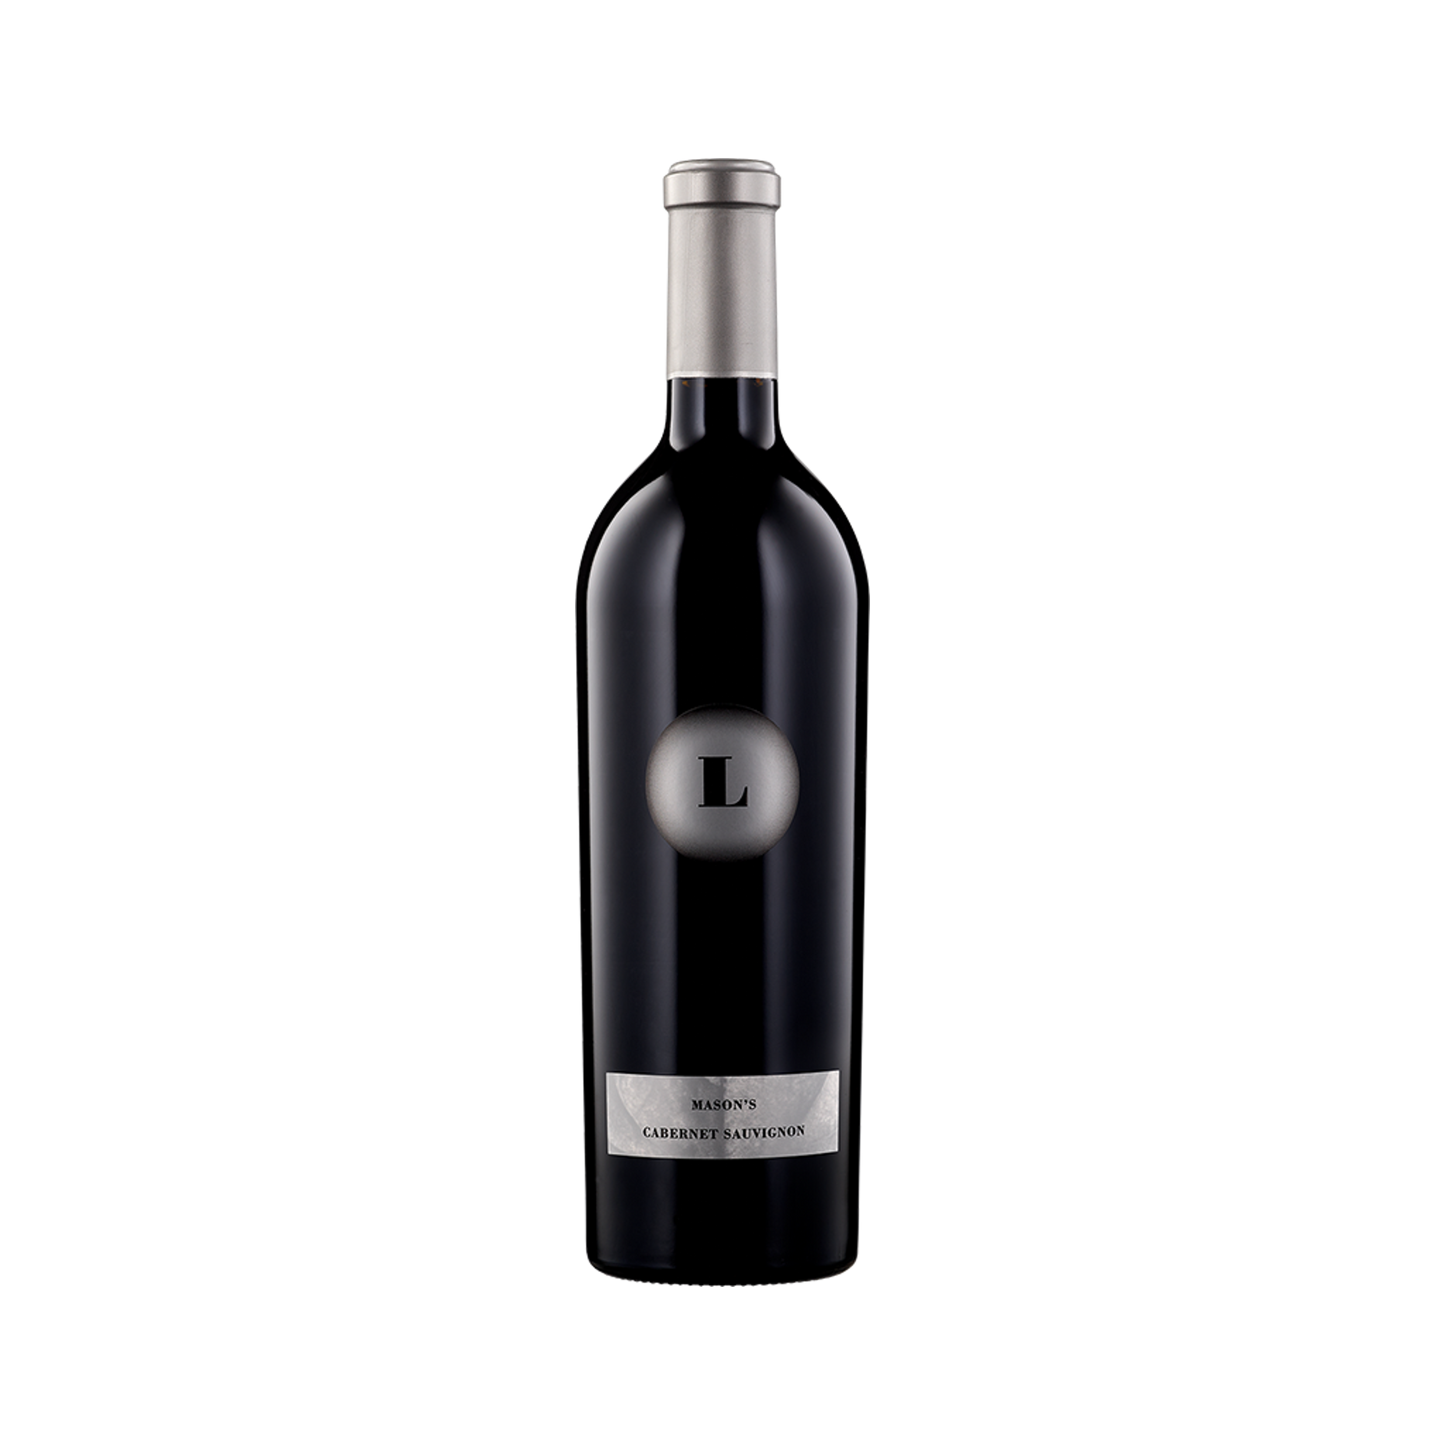 A bottle of Lewis Cellars 2019 Cabernet Sauvignon